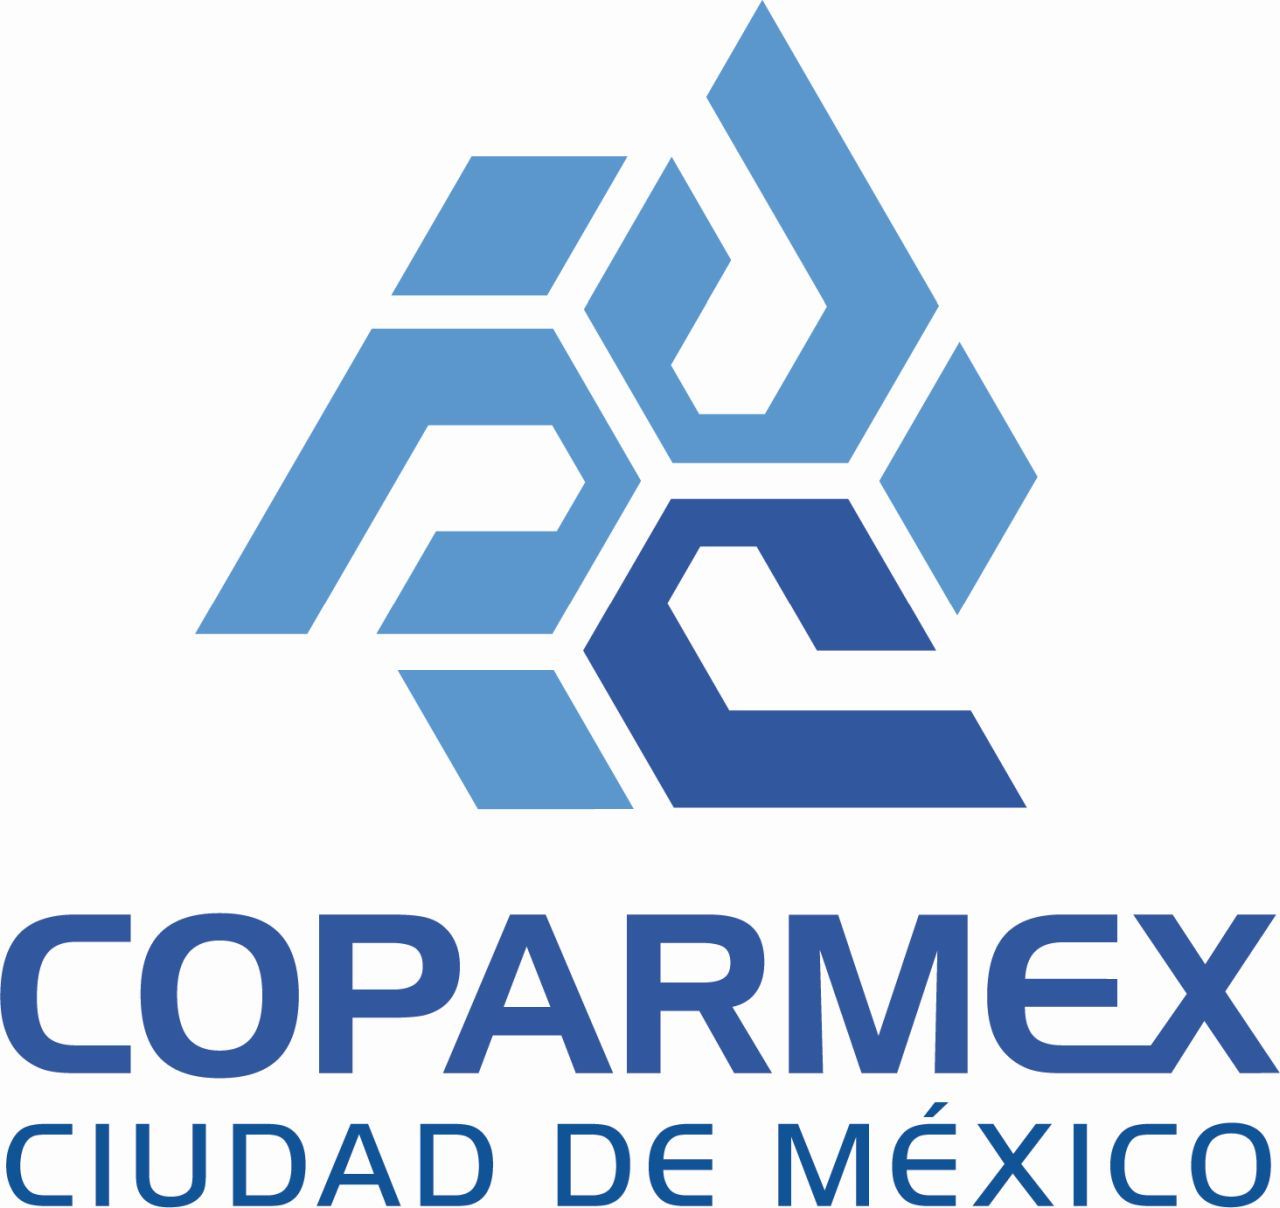  Hay acciones, faltan resultados en algunos rubros perceptibles para la población: COPARMEX CDMX 